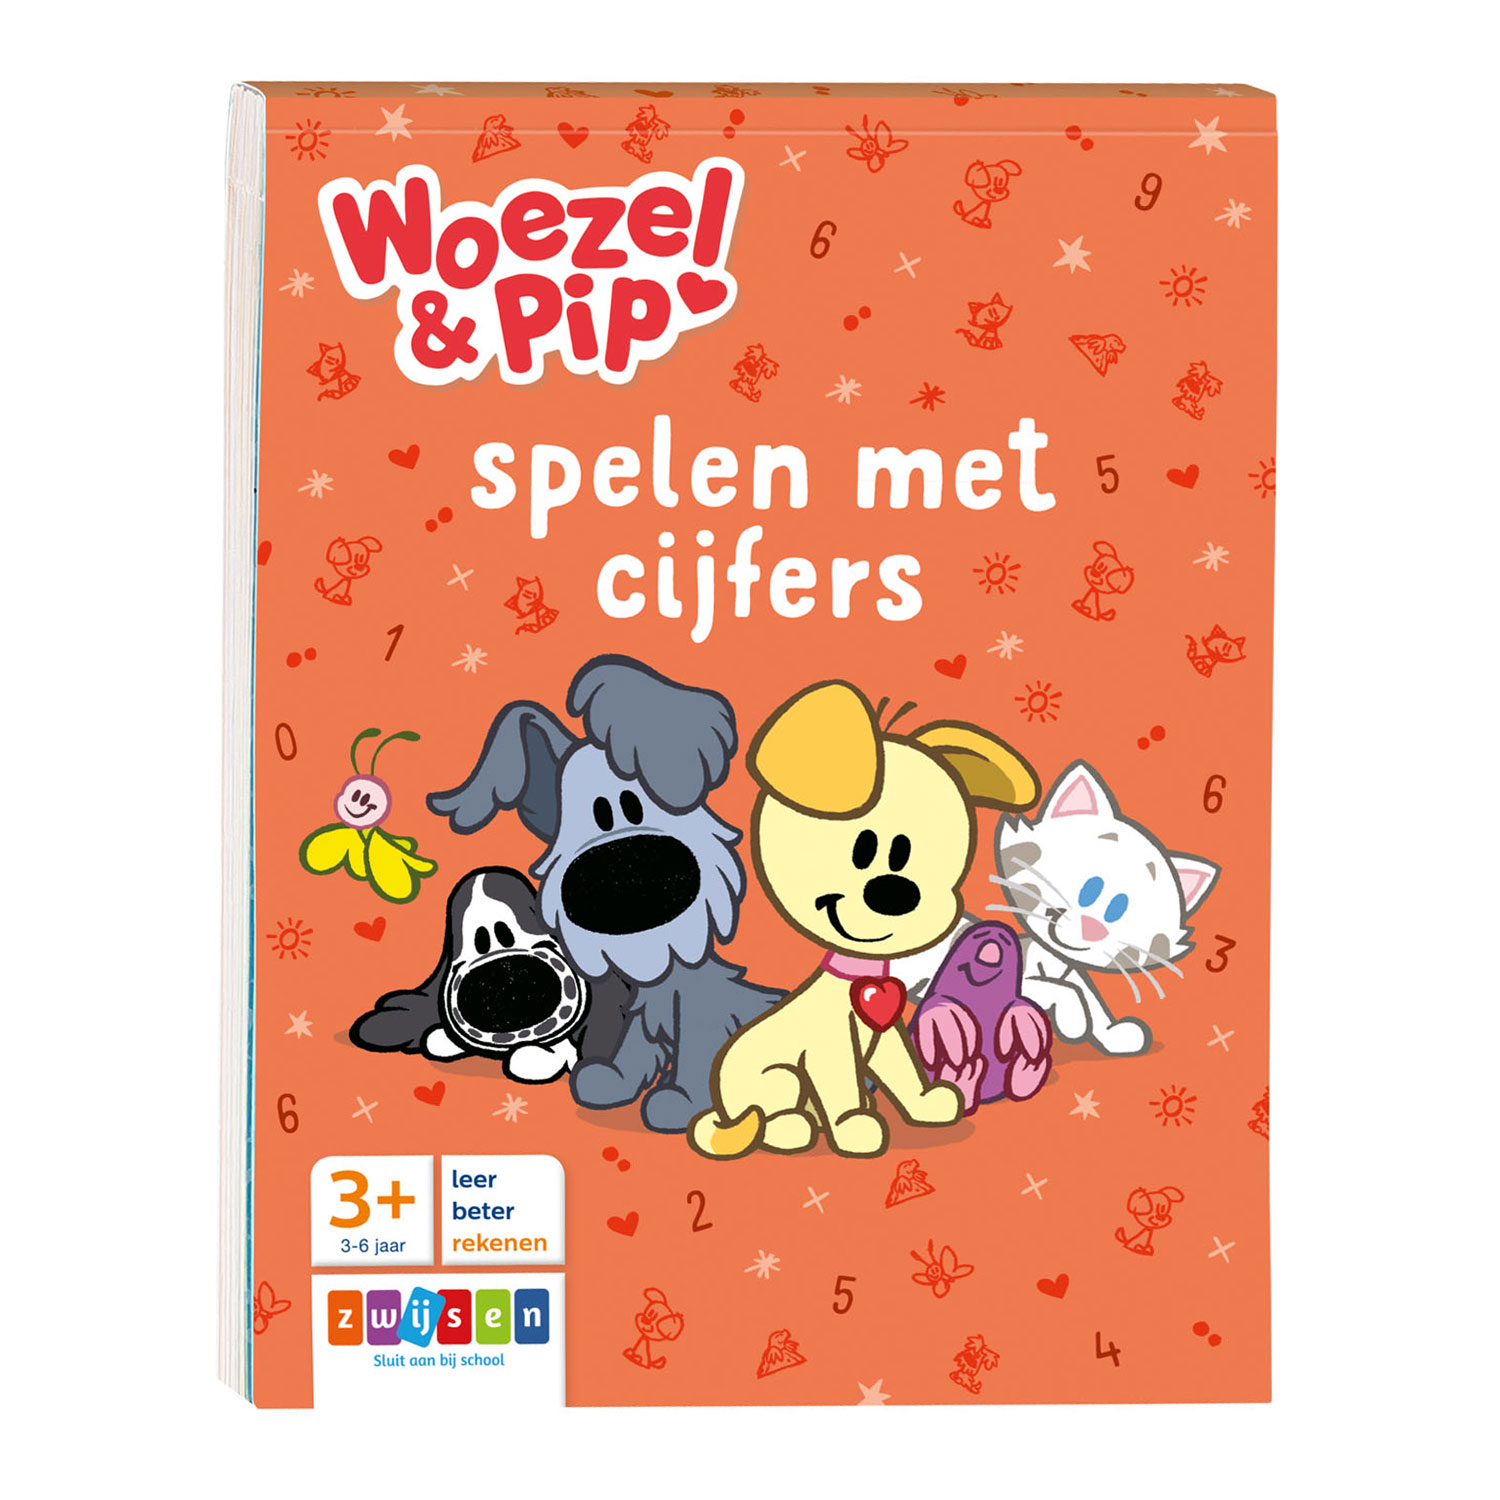 Sloppenwijk Continent Definitie Woezel & Pip spelen met cijfers online ... | Lobbes Speelgoed België